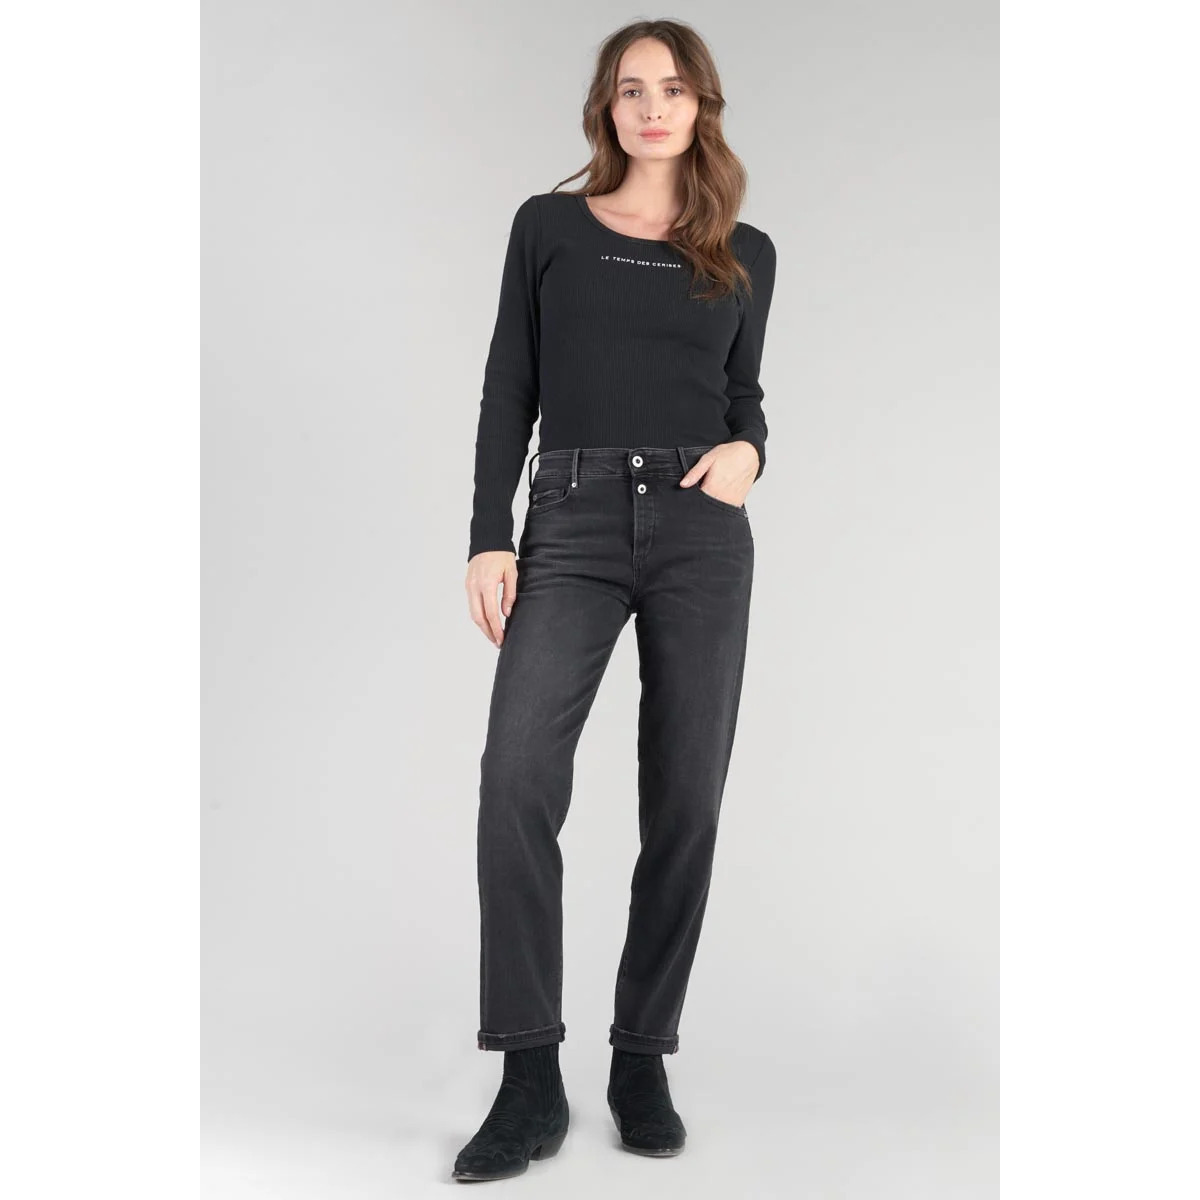 Le Temps des Cerises Noir Basic 400/18 mom taille haute 7/8ème jeans noir 05nY6QSx